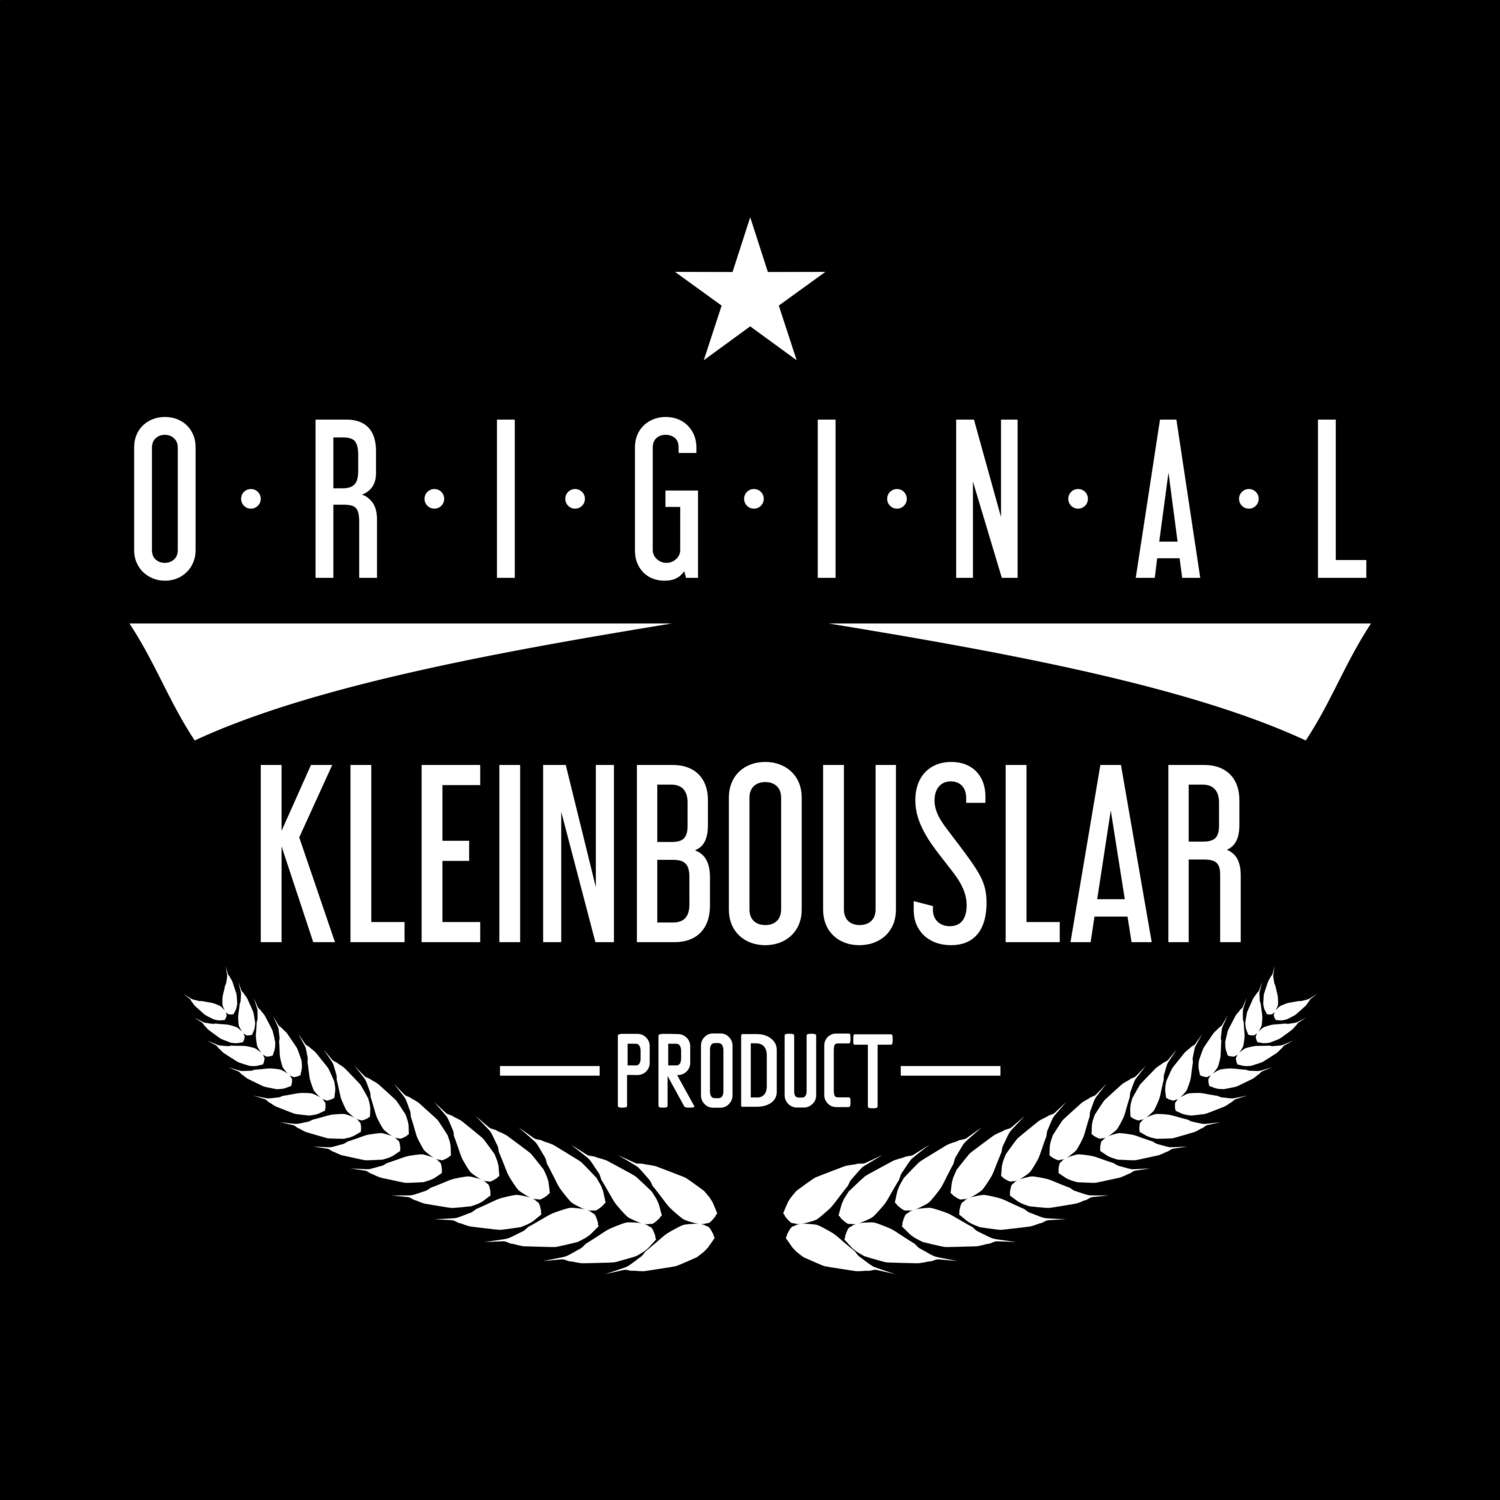 Kleinbouslar T-Shirt »Original Product«